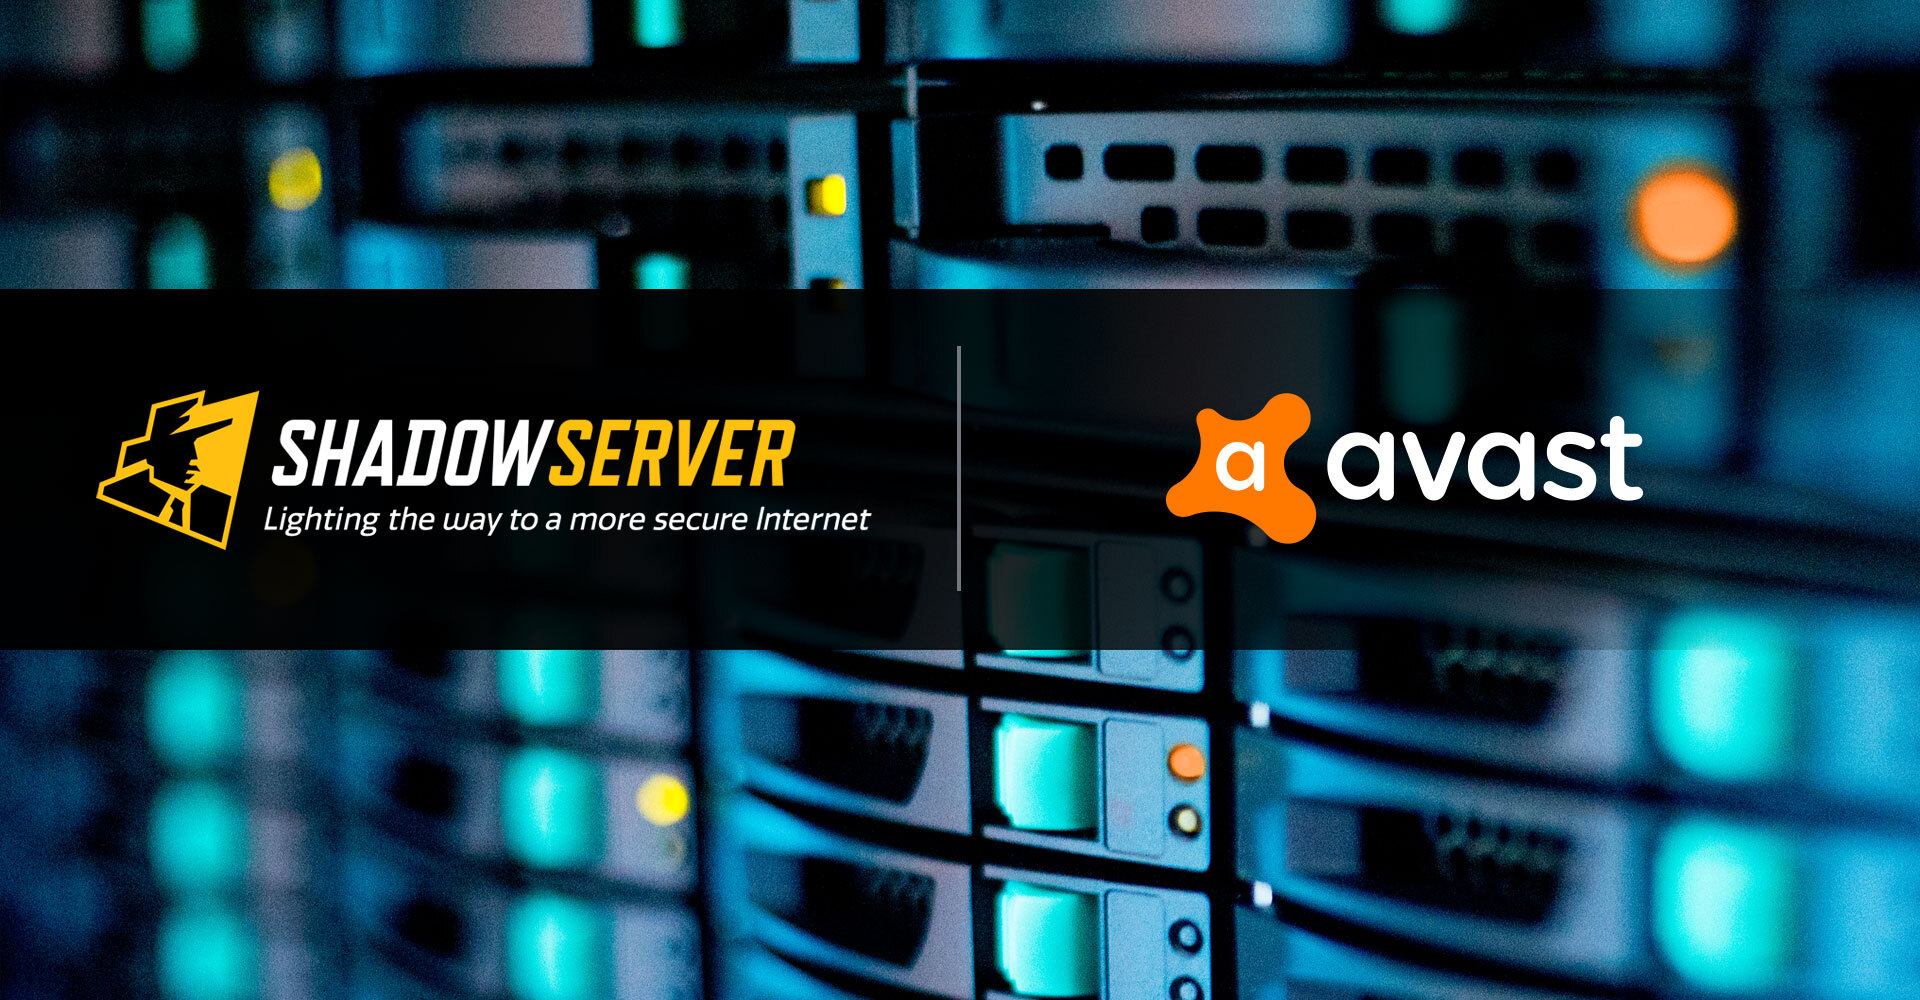 Avast supporta Shadowserver con una donazione di 500.000 dollari